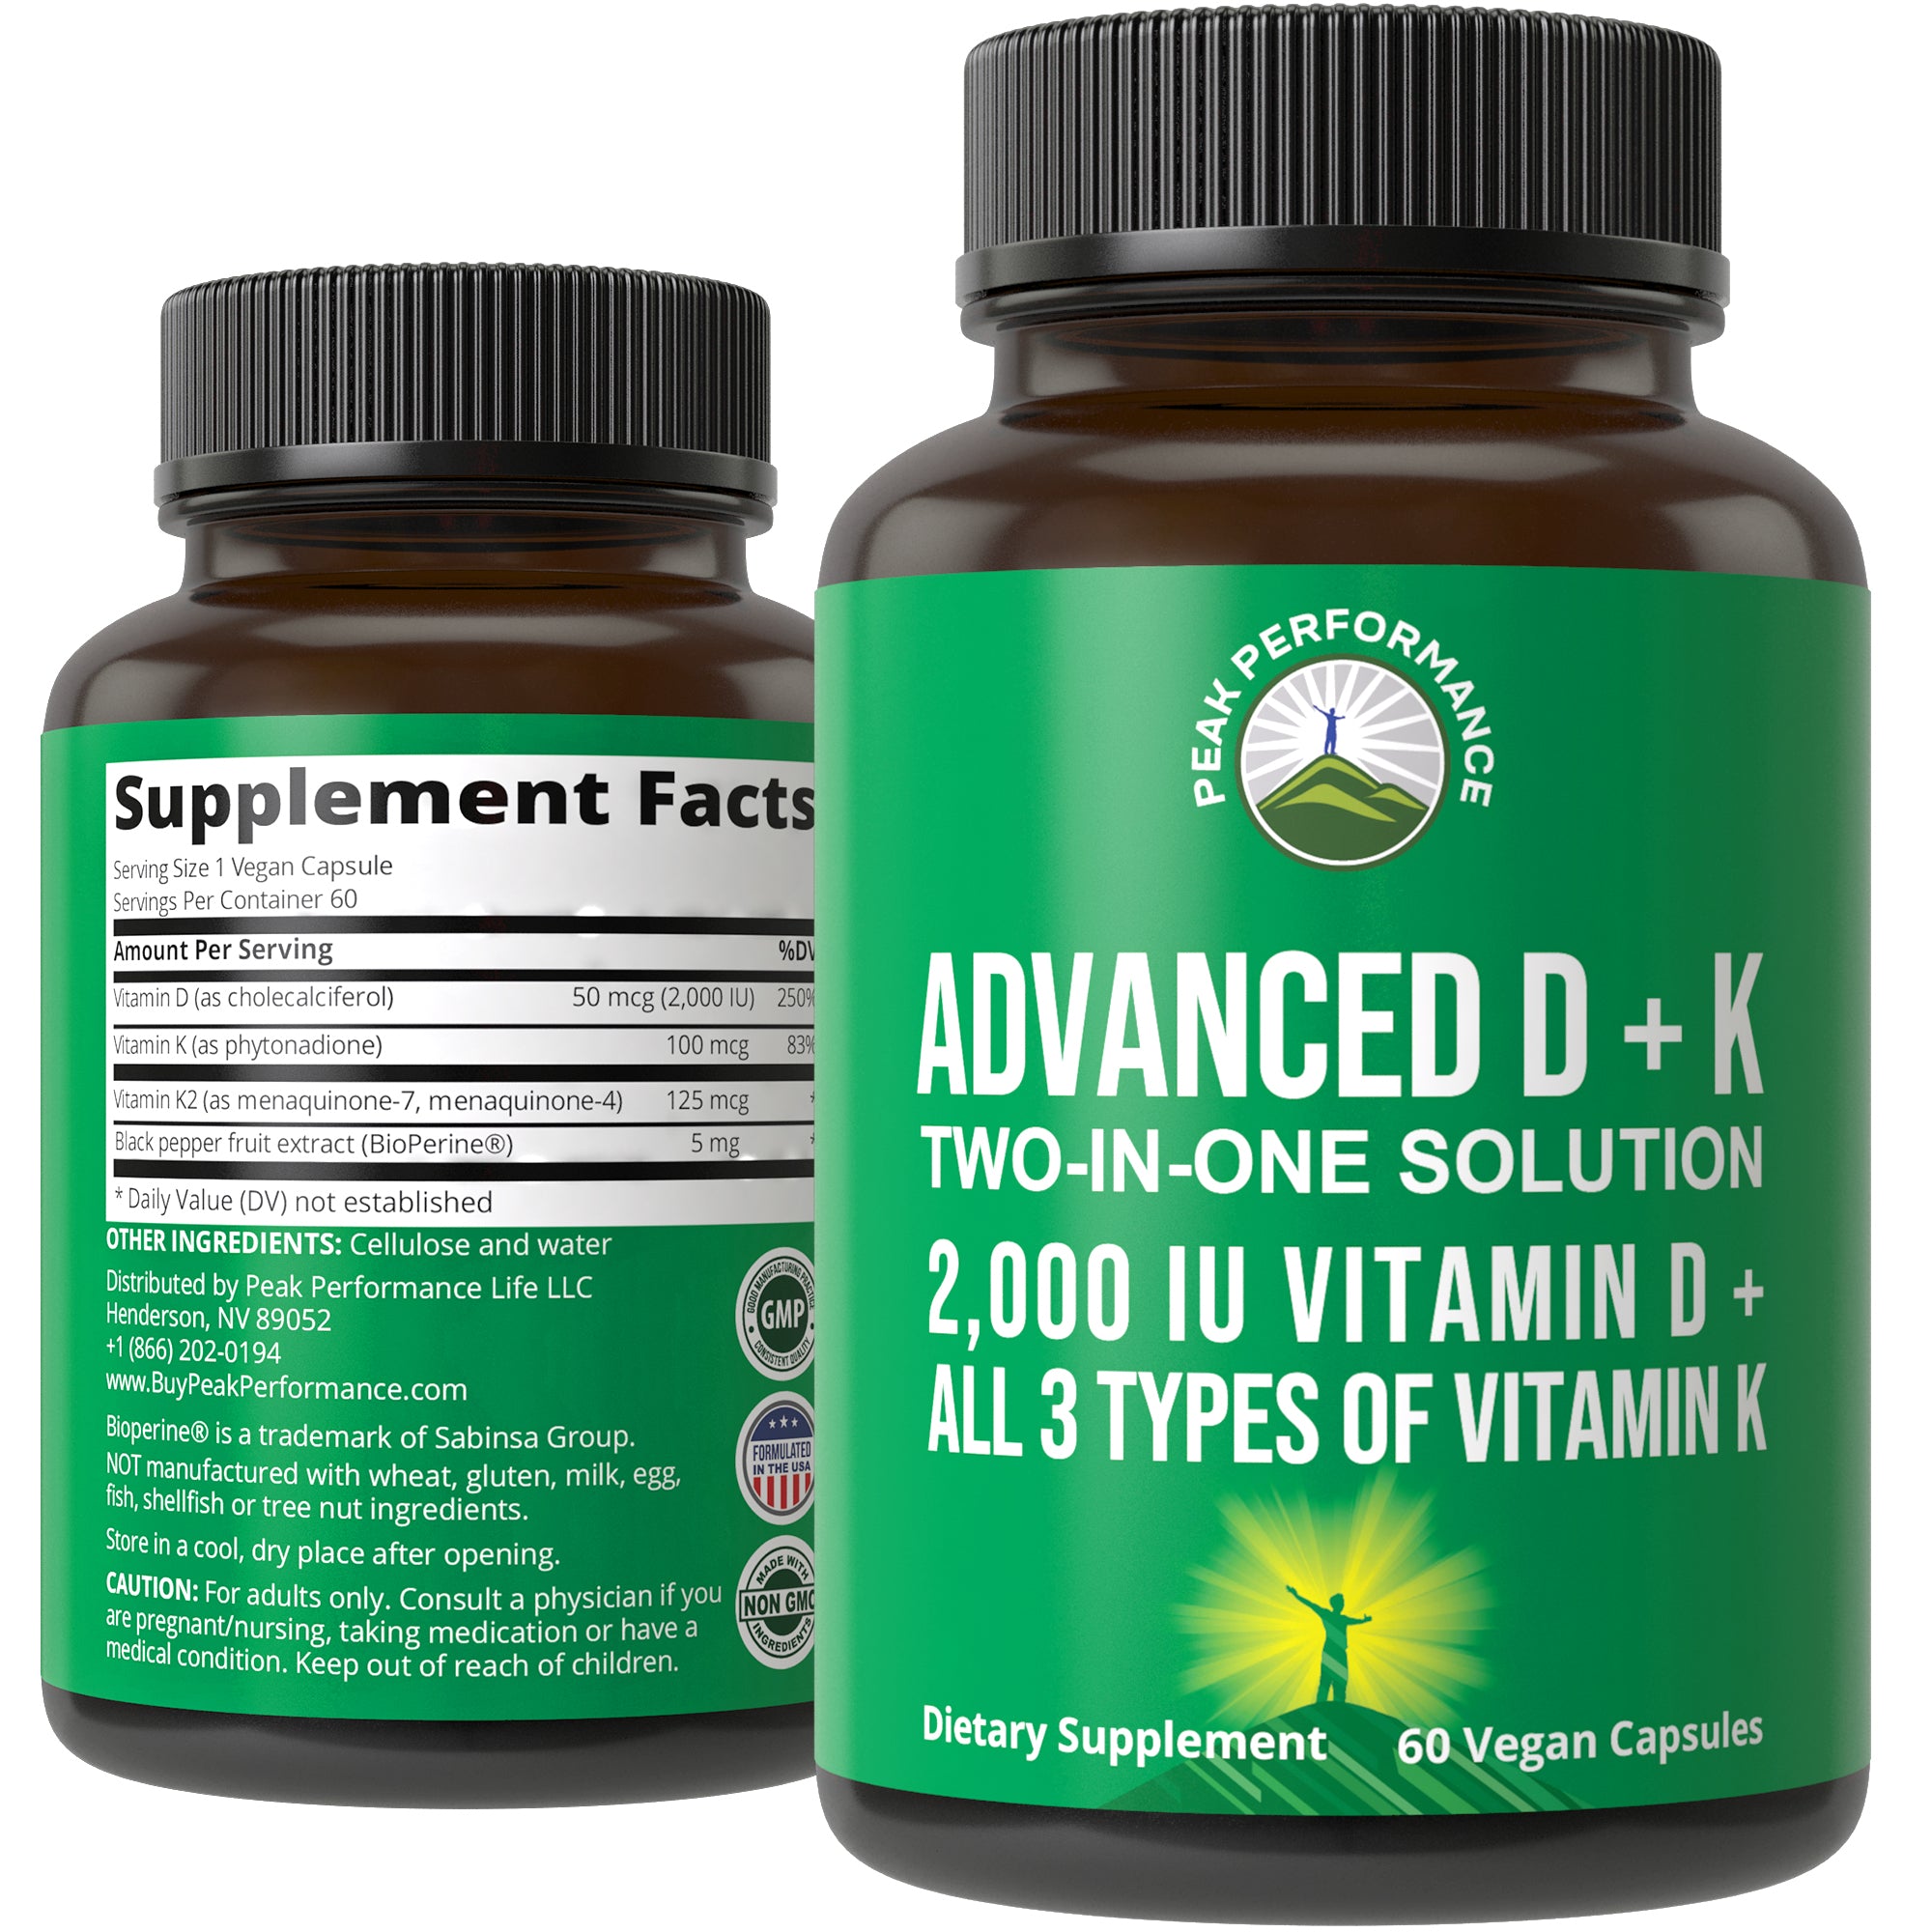 Advanced Vitamin D 2,000 IU + All 3 Types of Vitamin K